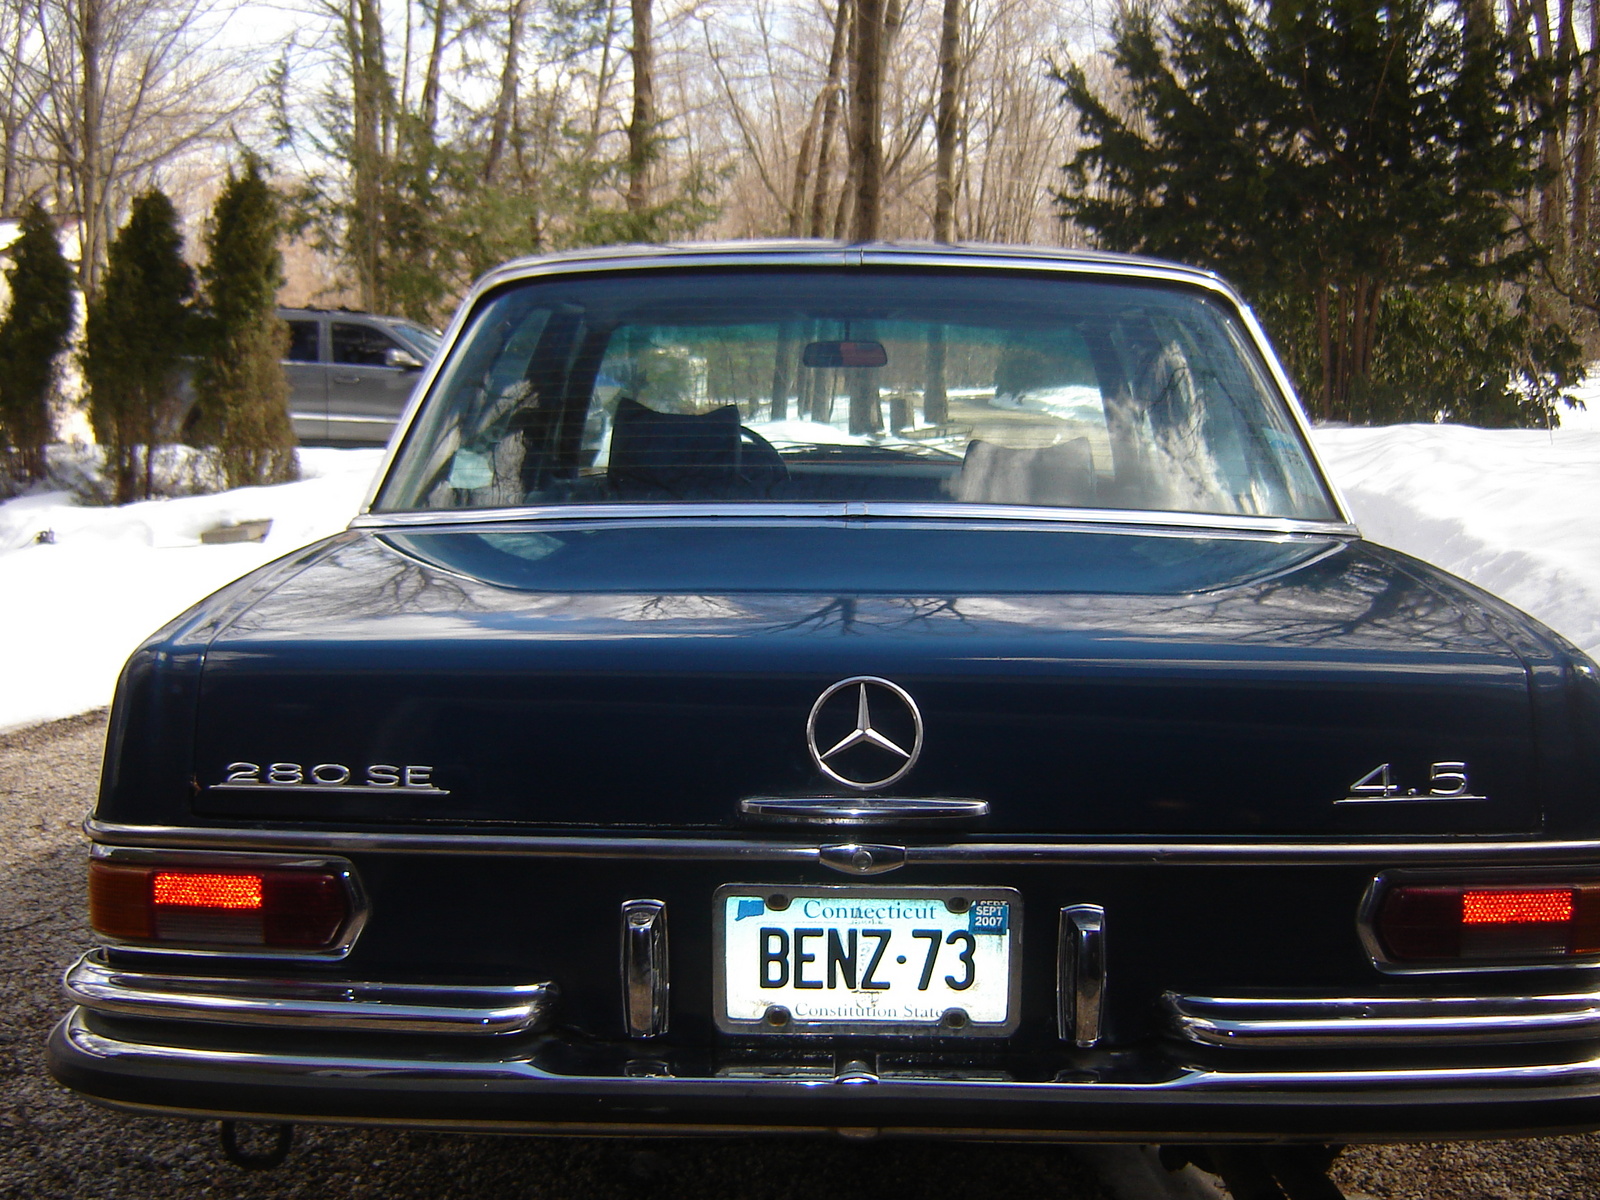 1977 280 Benz e mercedes #4